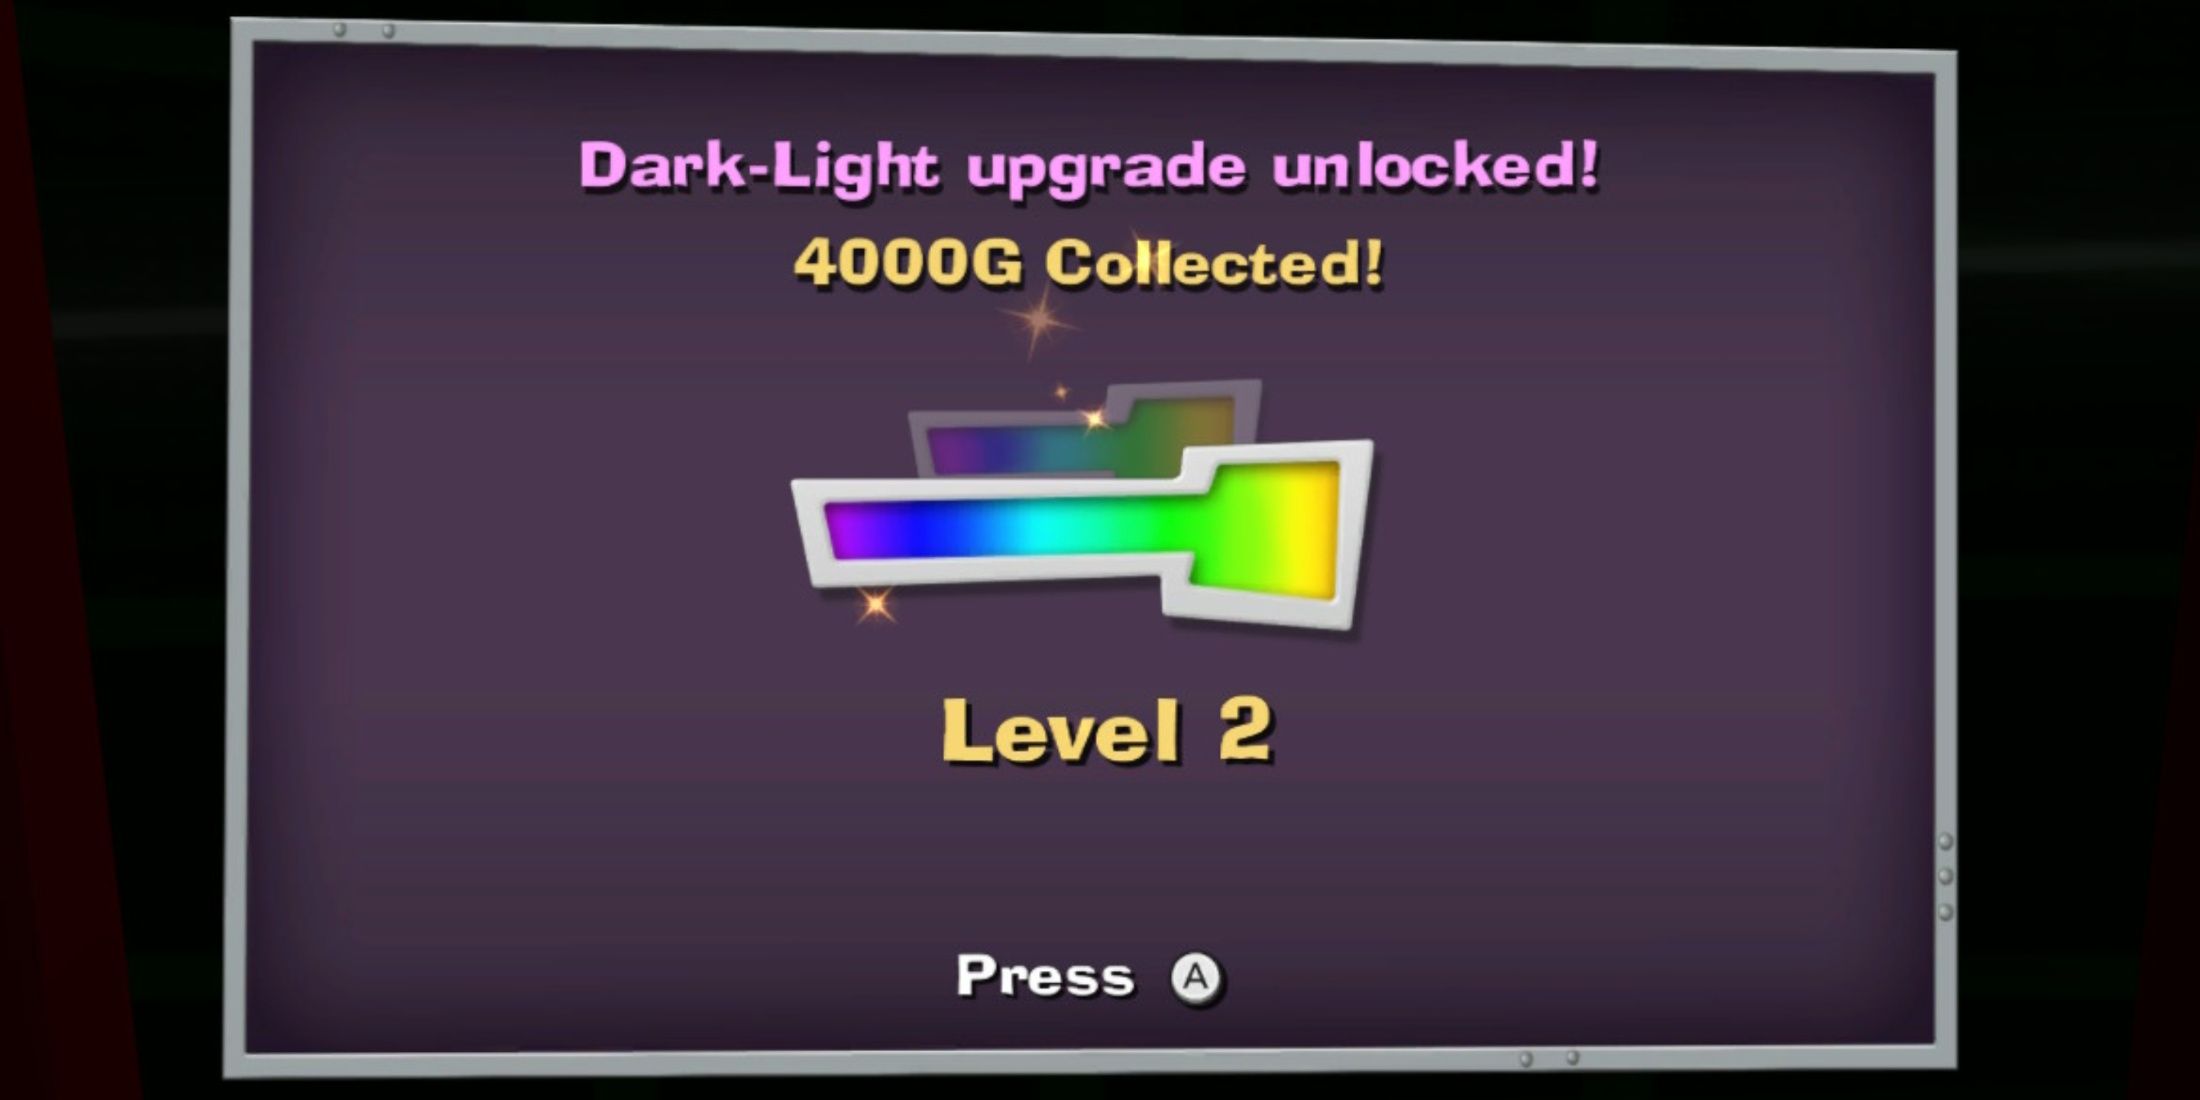 dark light device upgrade unlocked screen